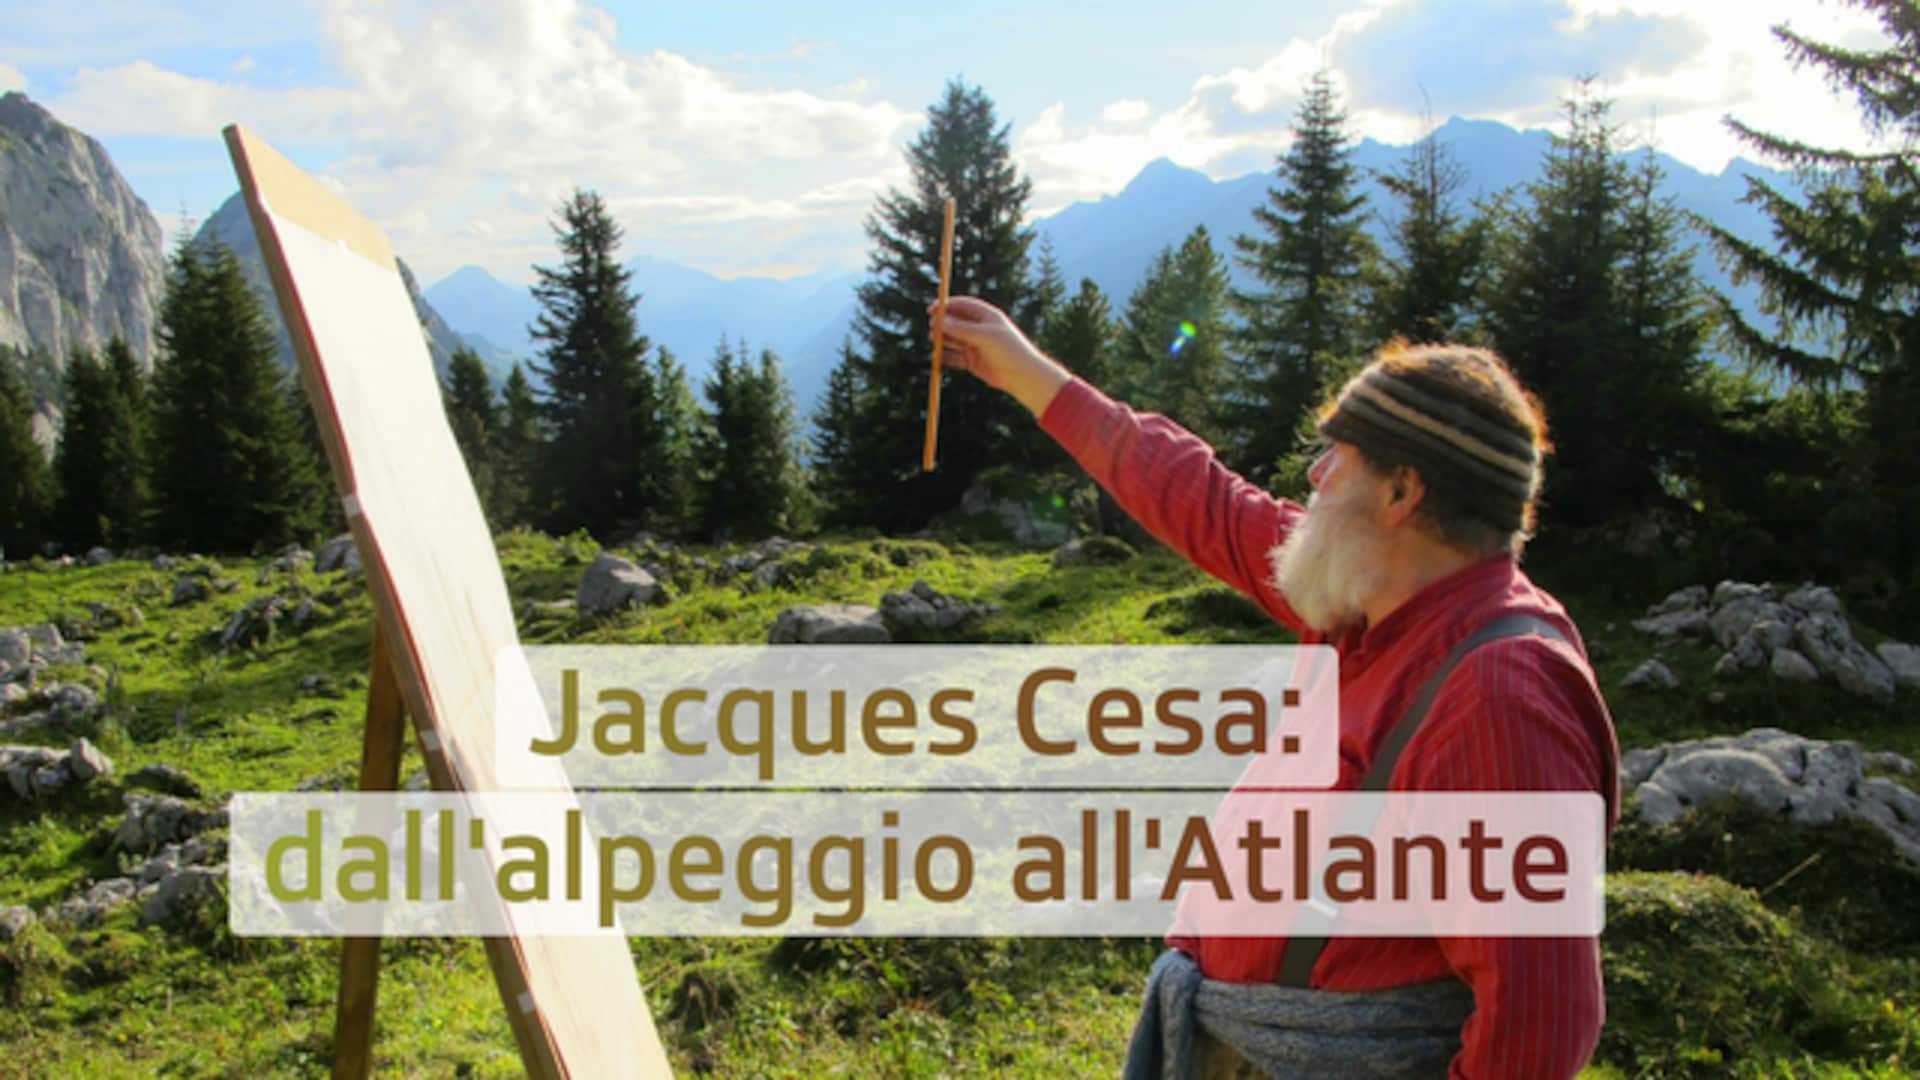 Jacques Cesa: dall'alpeggio all'Atlante